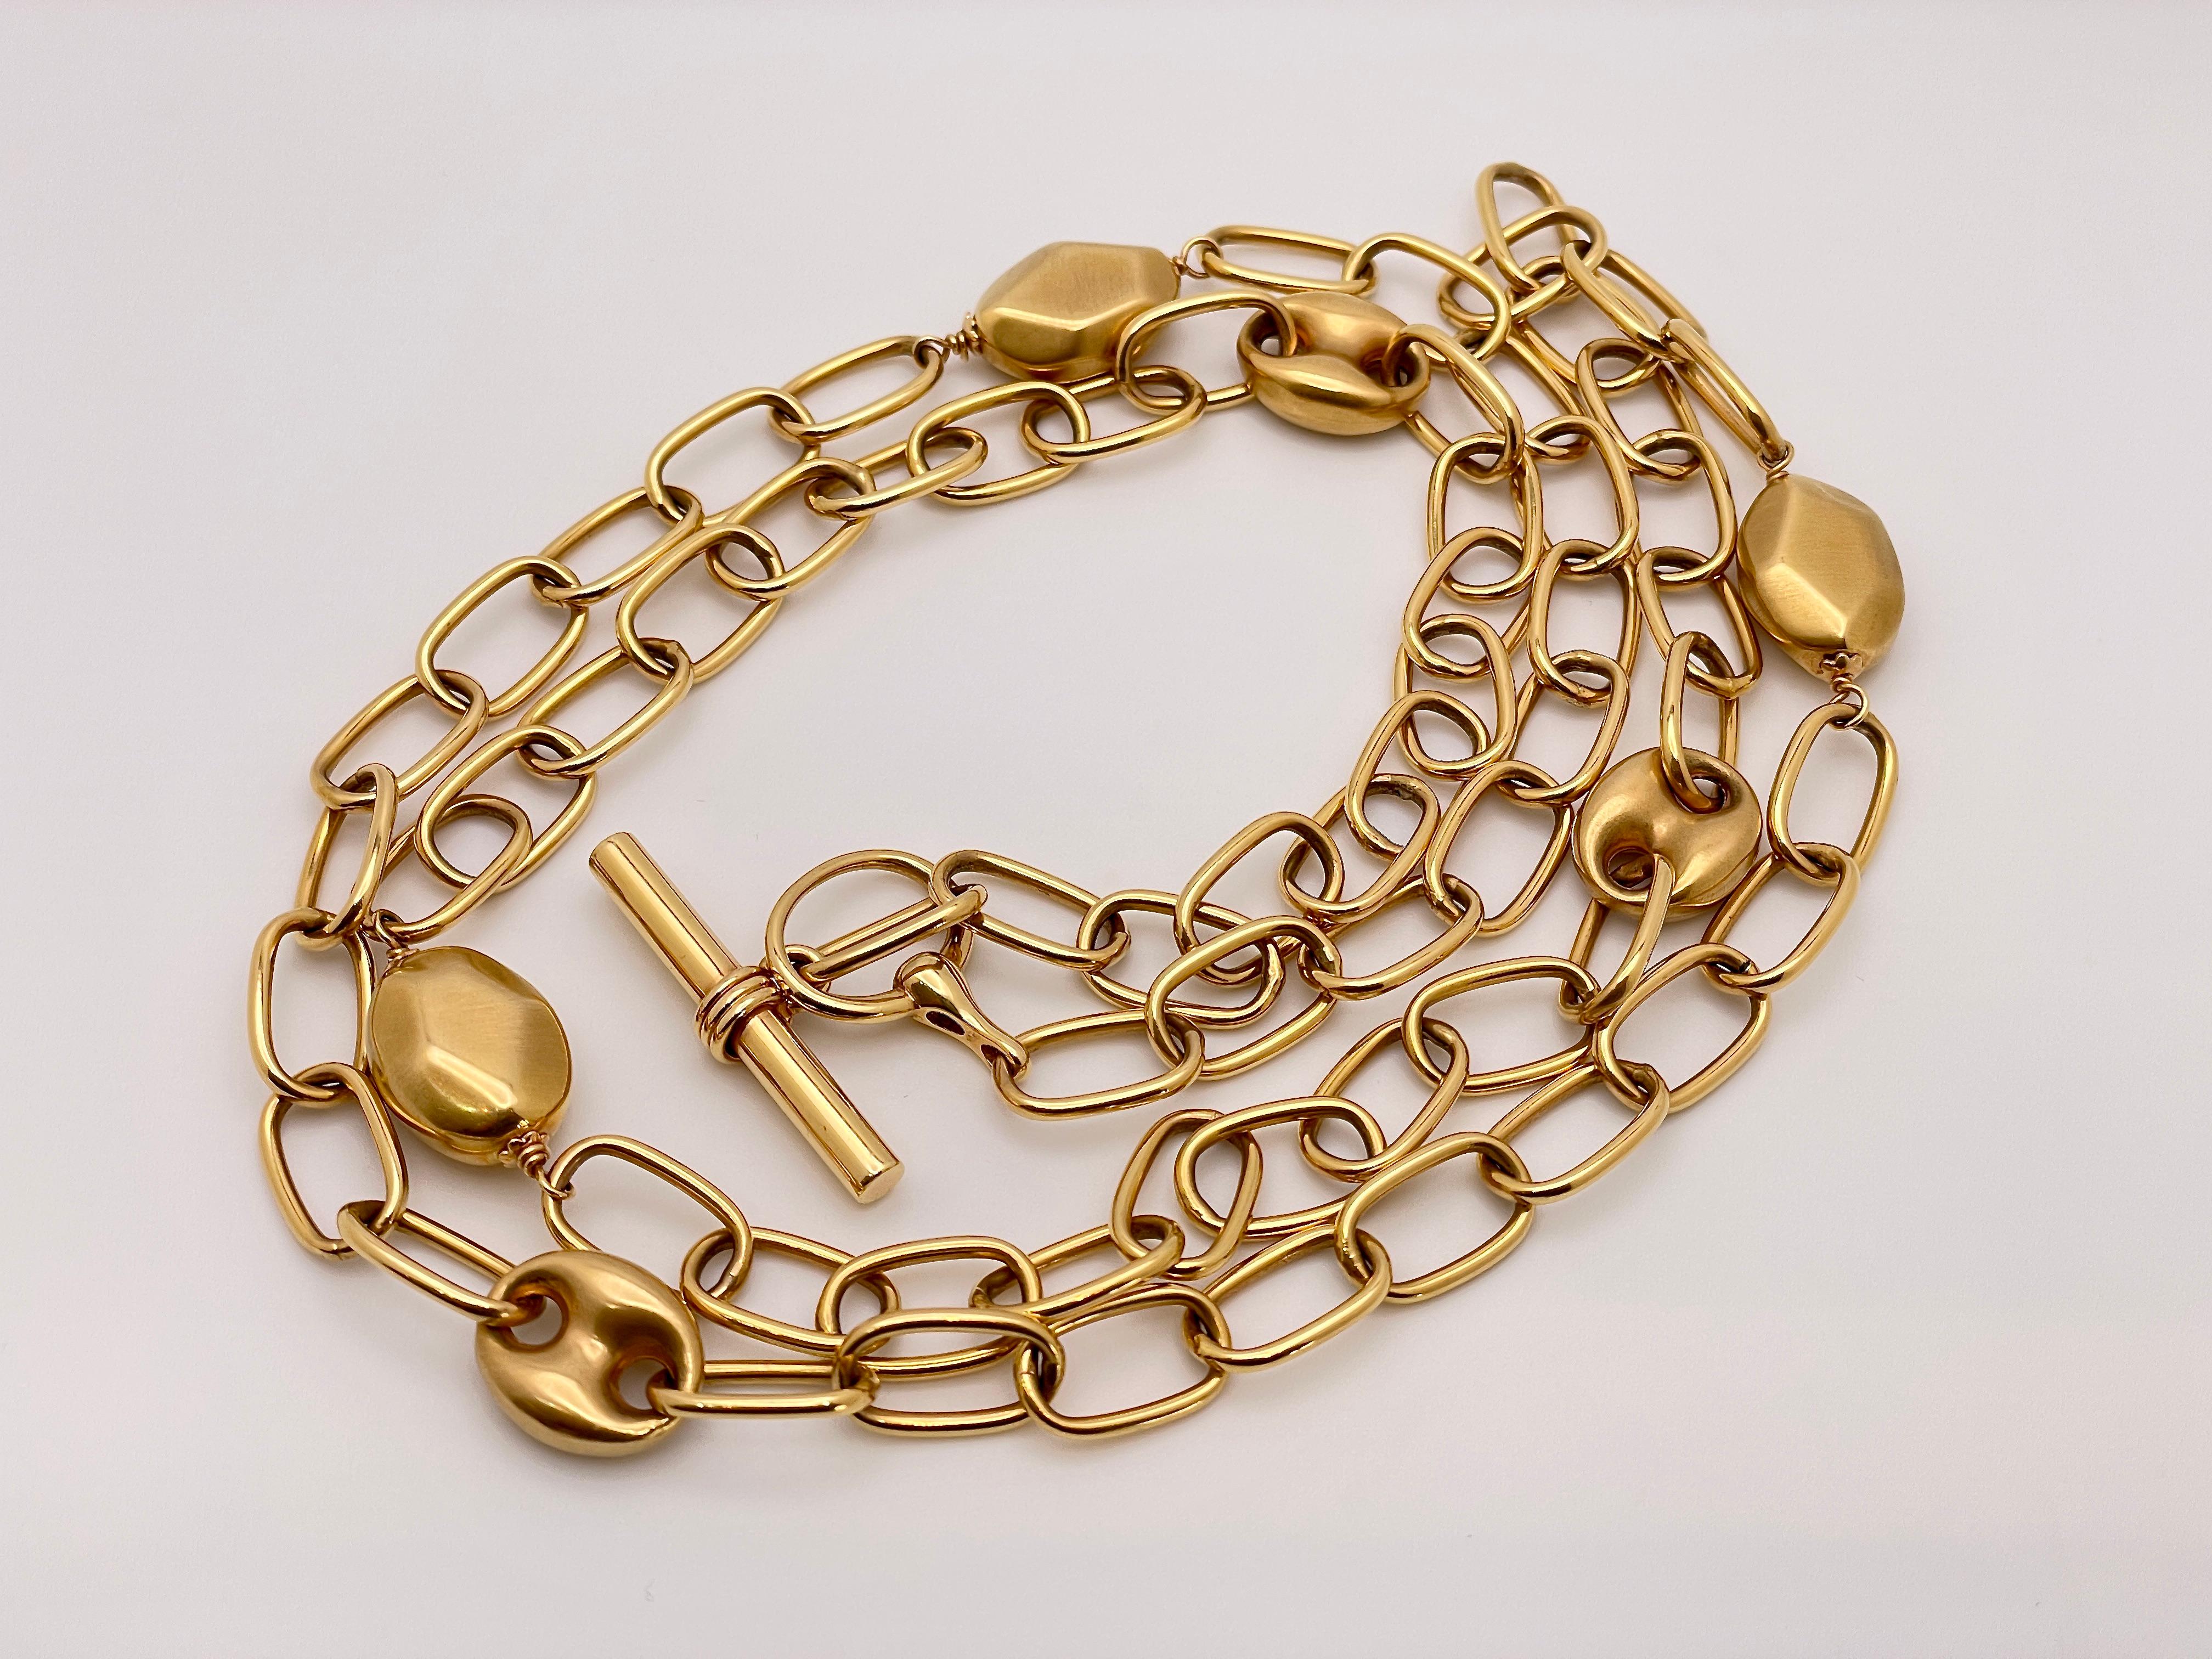 Eine prächtige, handgefertigte Halskette mit Knebelverschluss aus 18 Karat Roségold mit einem Design von Gucci. Die Halskette ist mit facettenreichen Goldkugeln und von Gucci entworfenen Gliedern verziert. Diese elegante Halskette misst 35 Zoll und